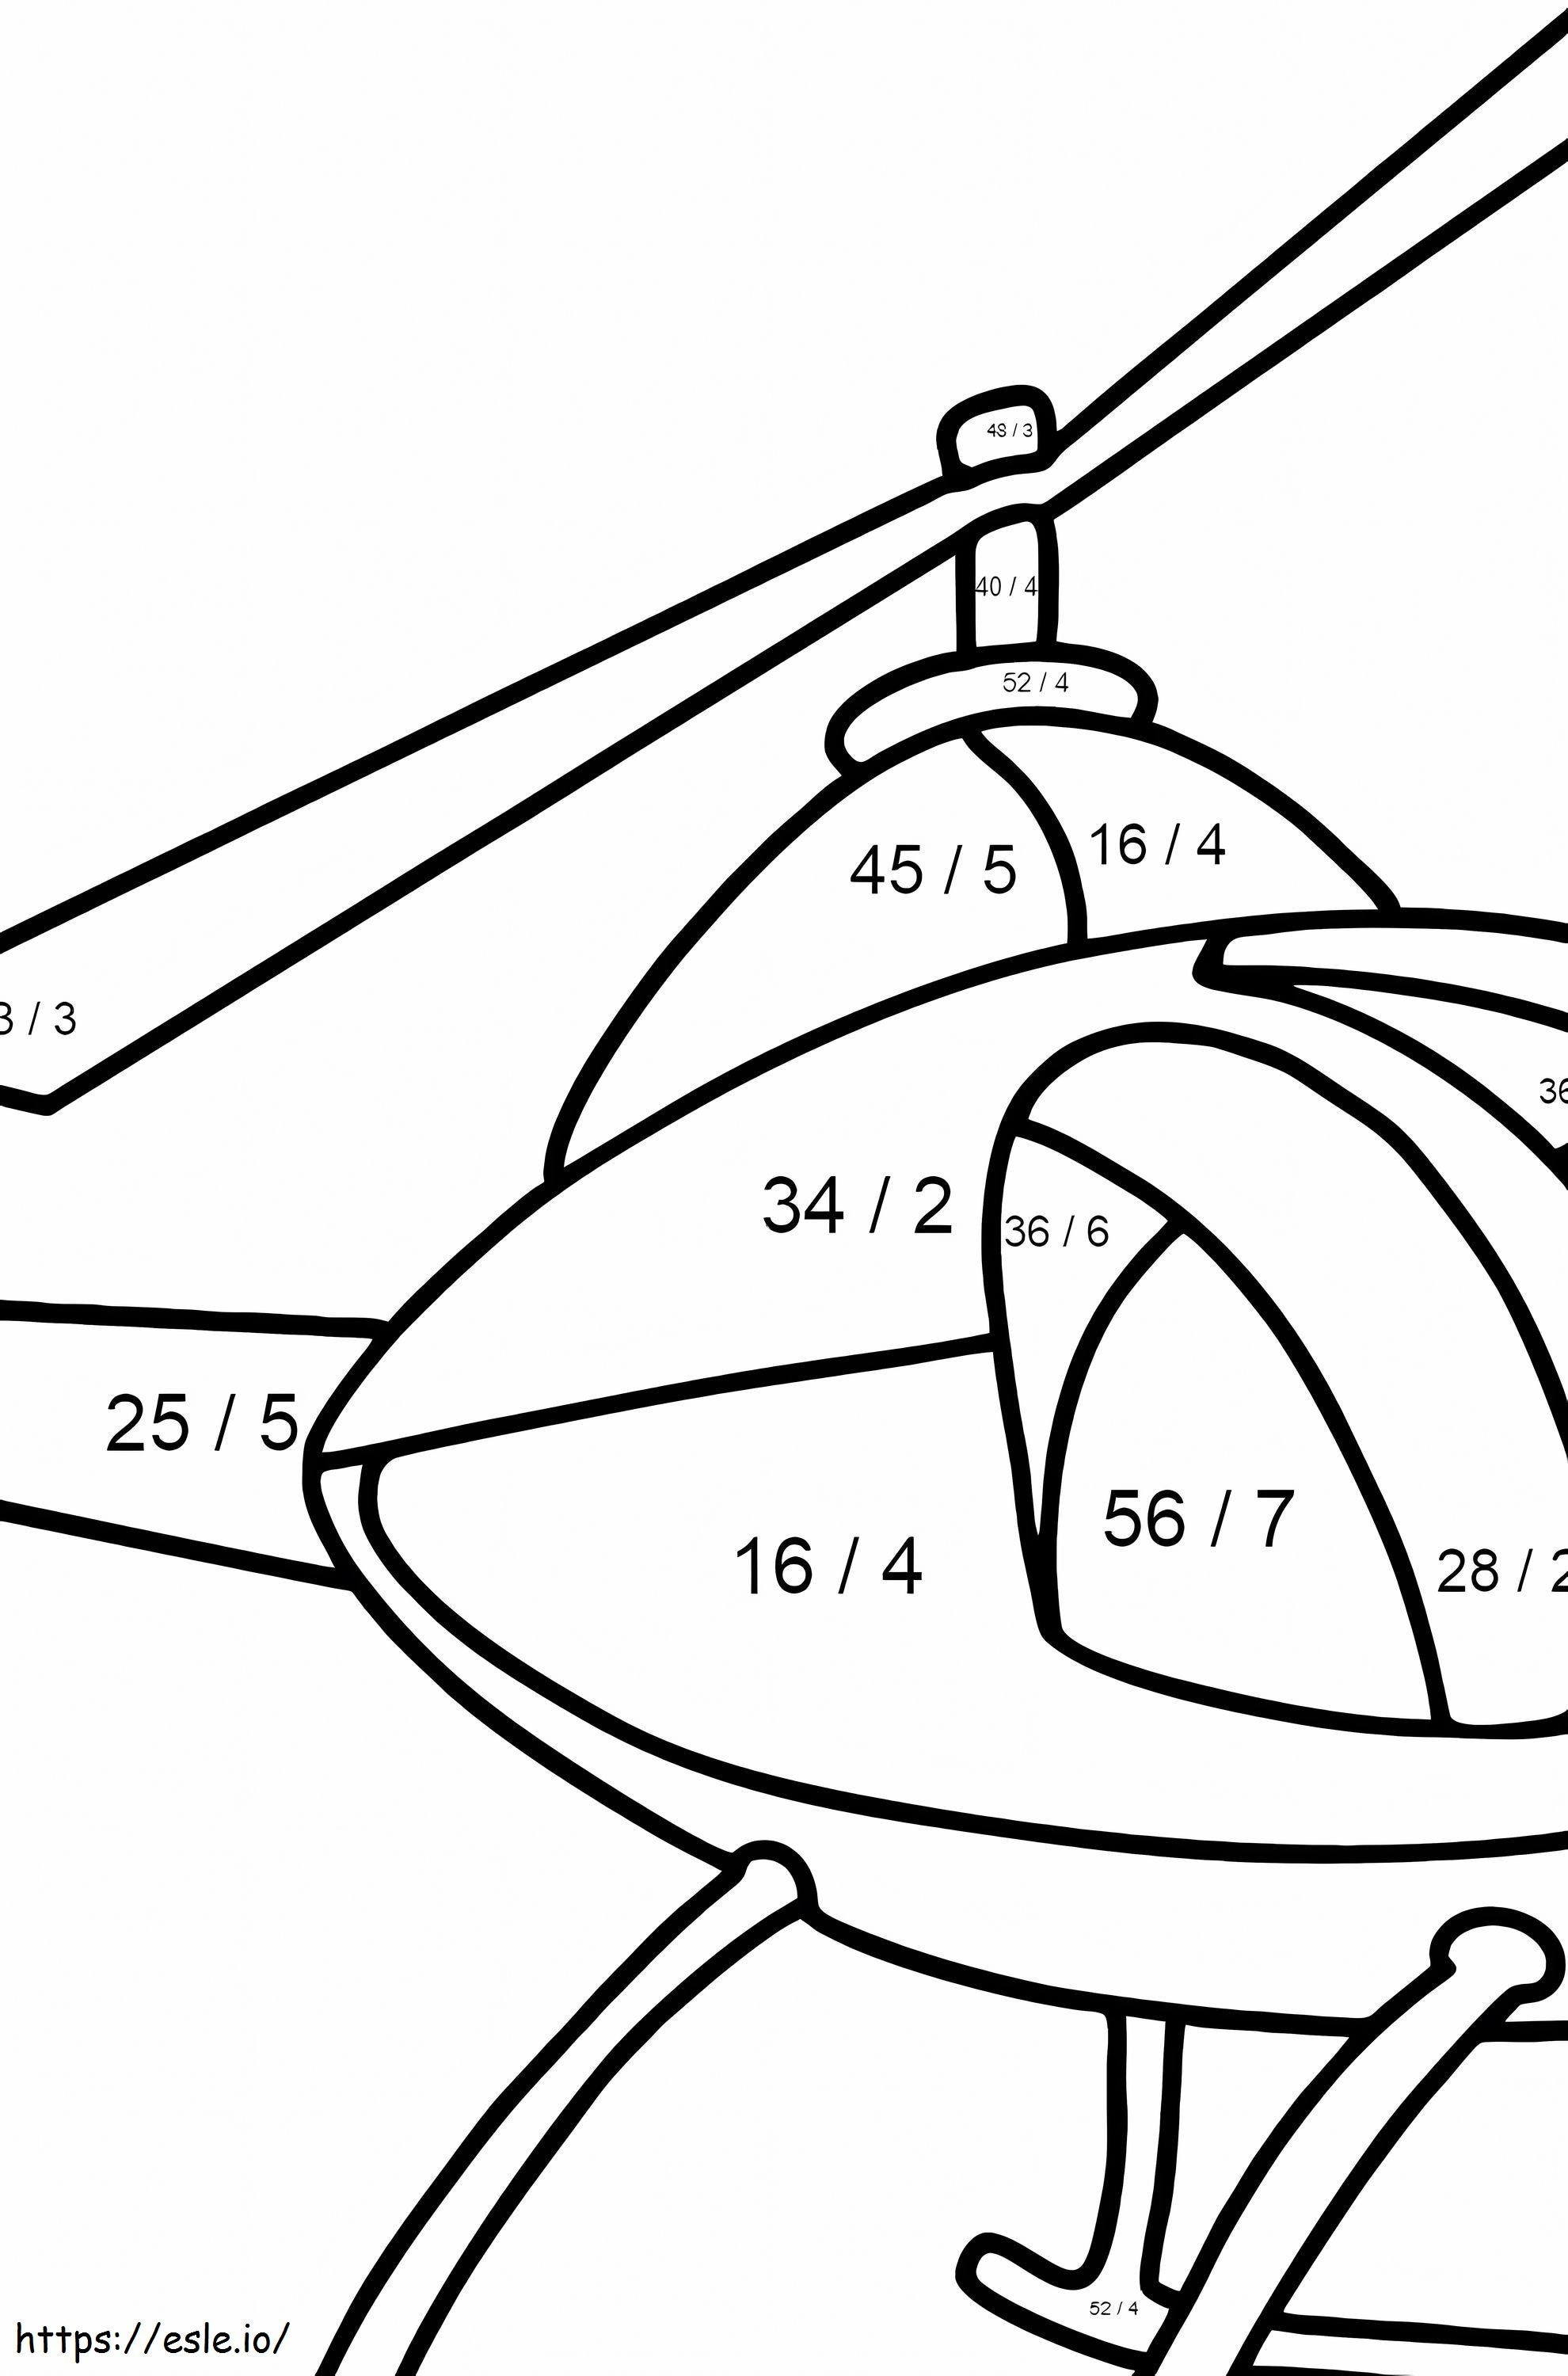 Colorazione Con I Numeri Un Elicottero da colorare